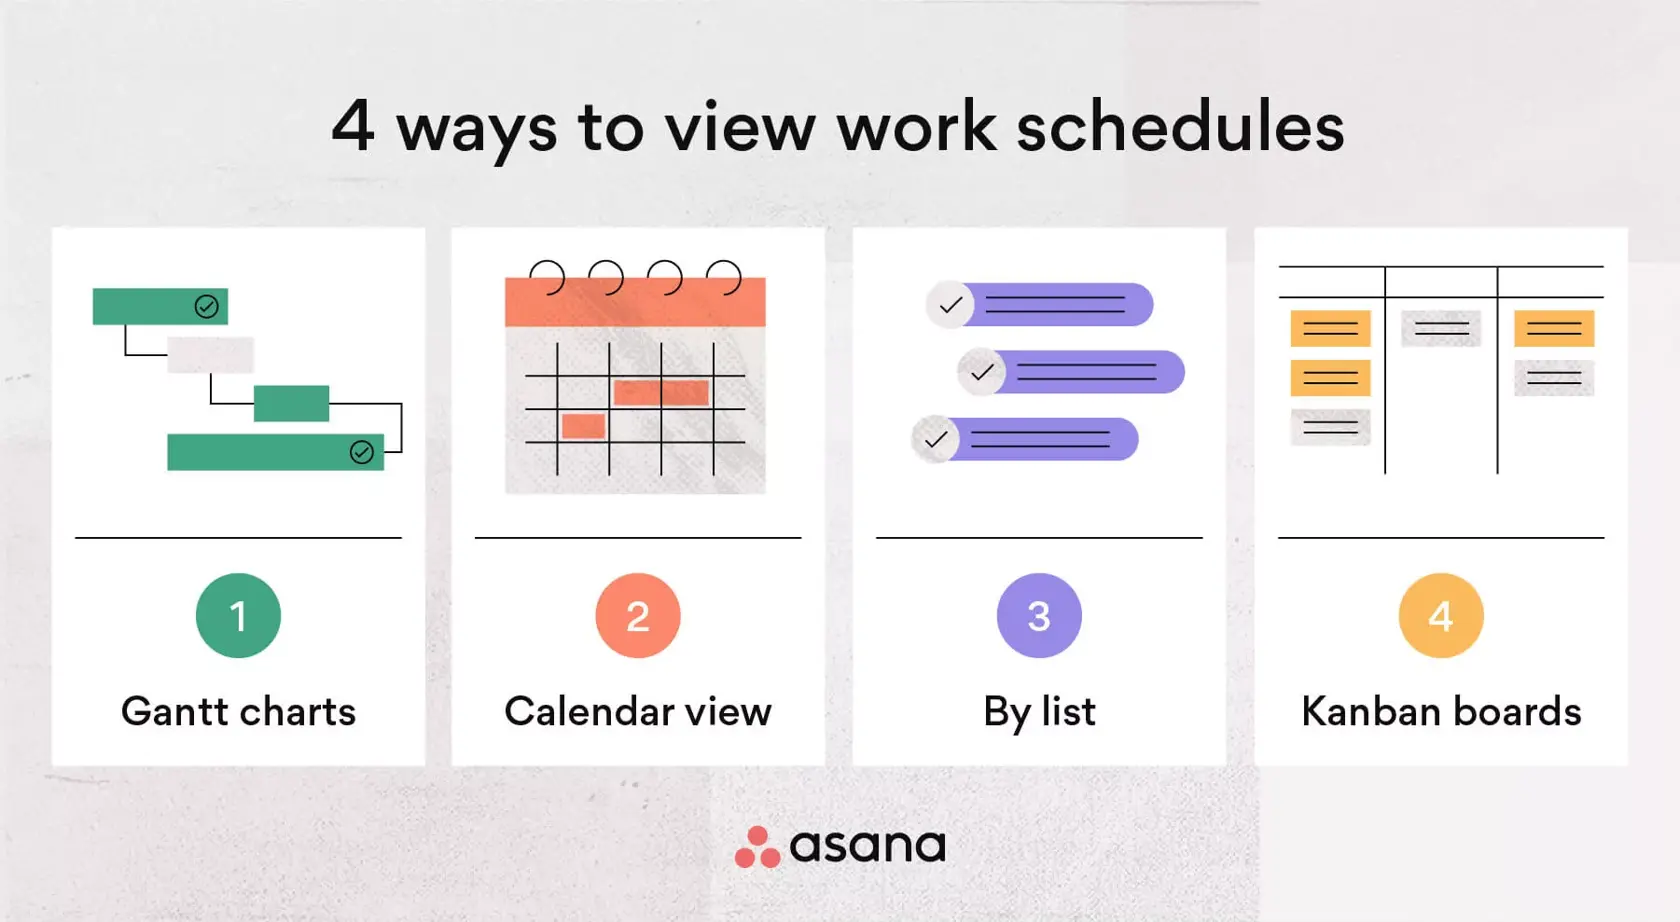 [inline illustration] 4 ways to view work schedules (infographic)